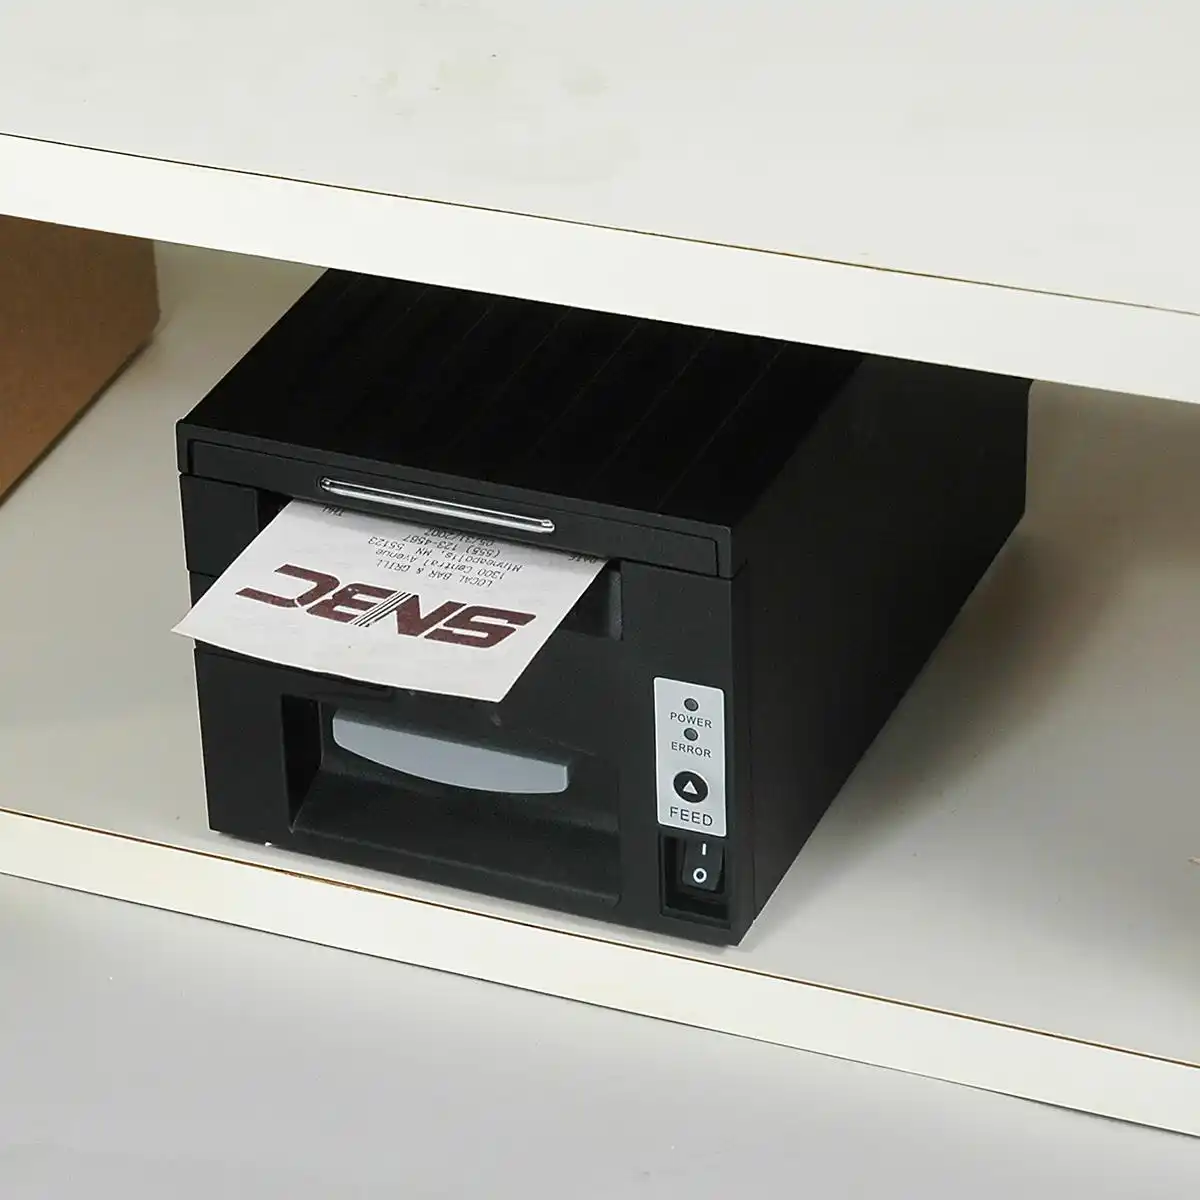 SNBC Bondrucker BTP-R681 mit seriellem, USB & Ethernet Anschlüssen in schwarz von vorne rechts eingebaut